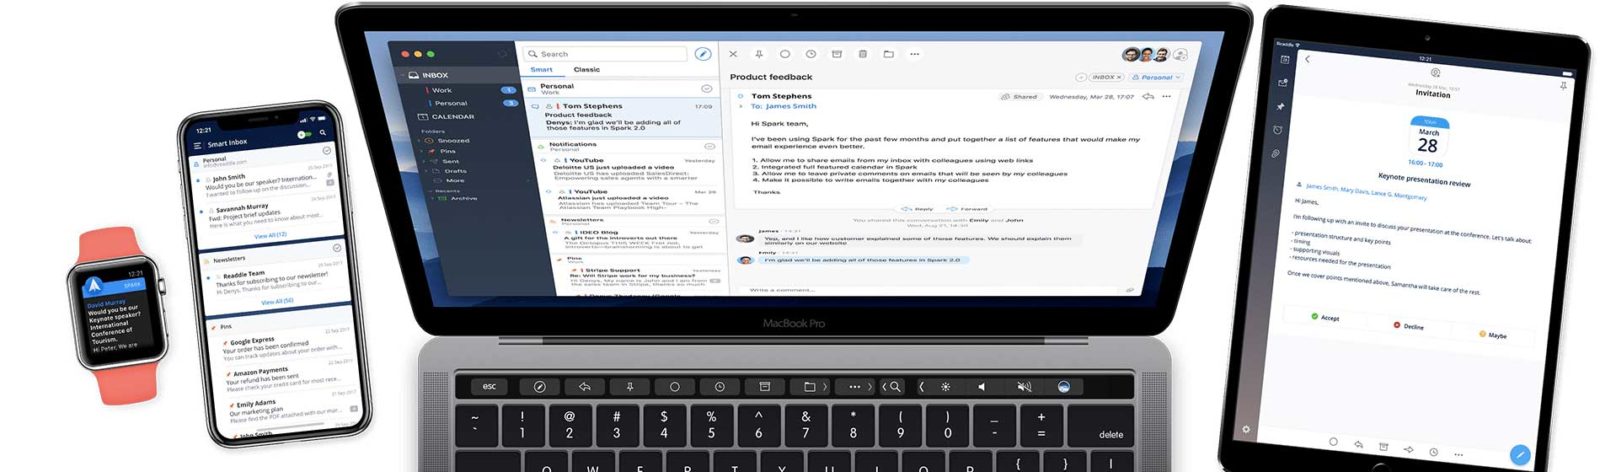 Recensione Spark 2 nuova versione del programma per gestire la posta sul Mac